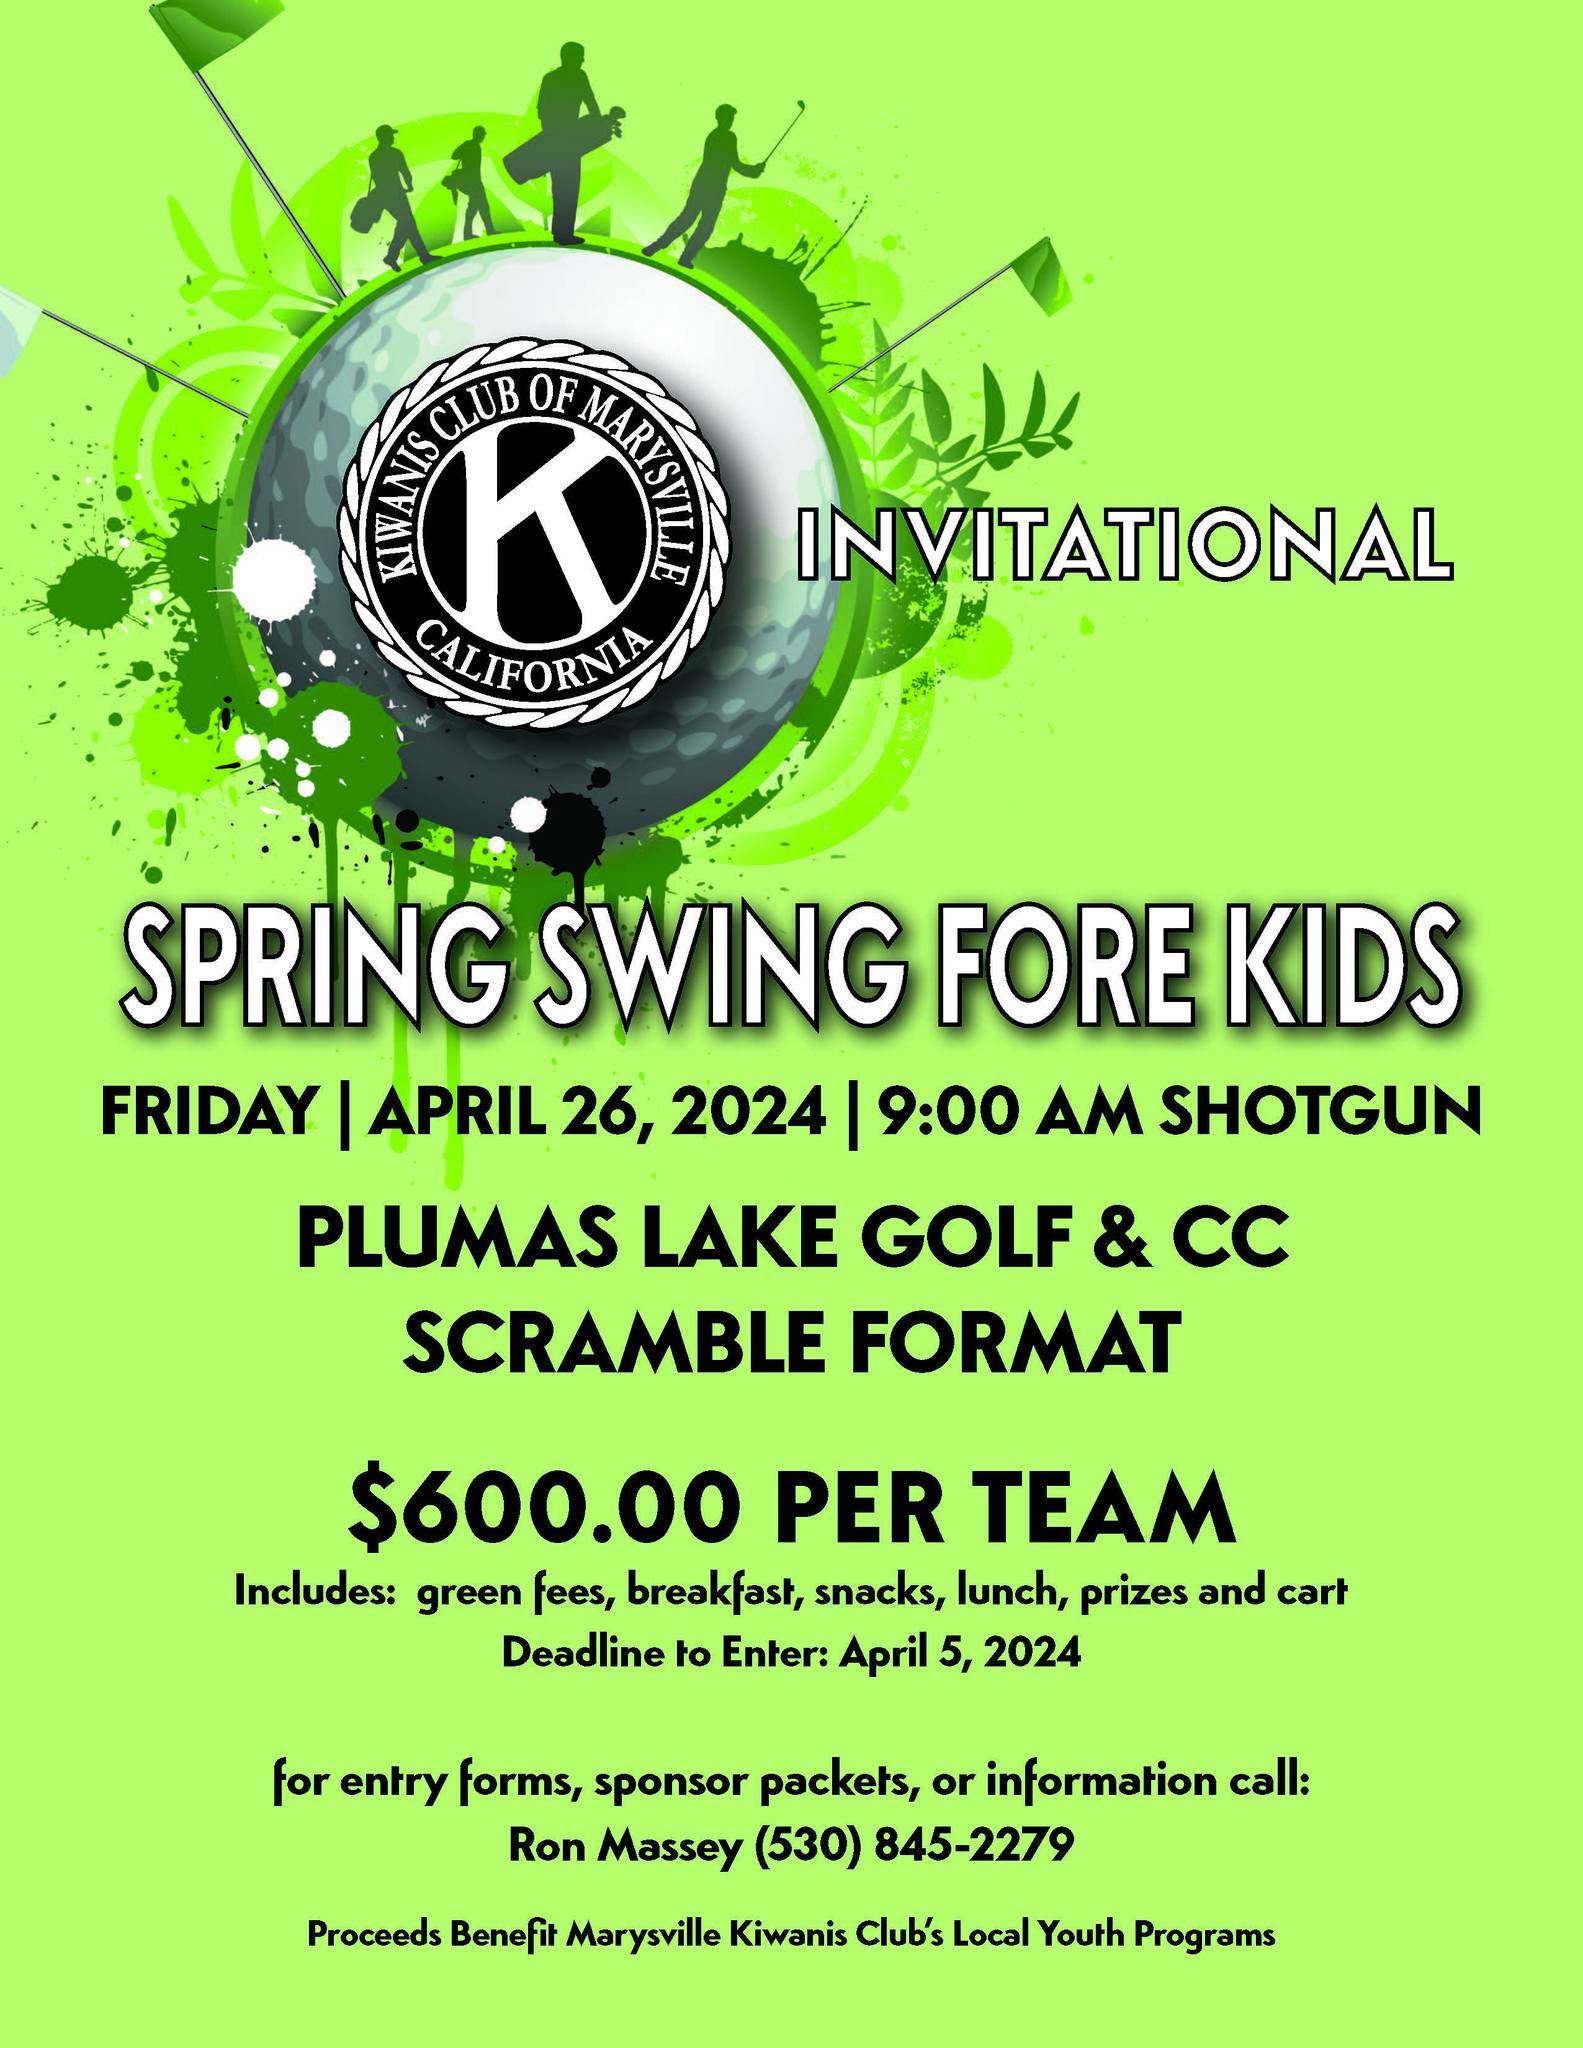 Marysville Kiwanis Spring Swing Fore Kids